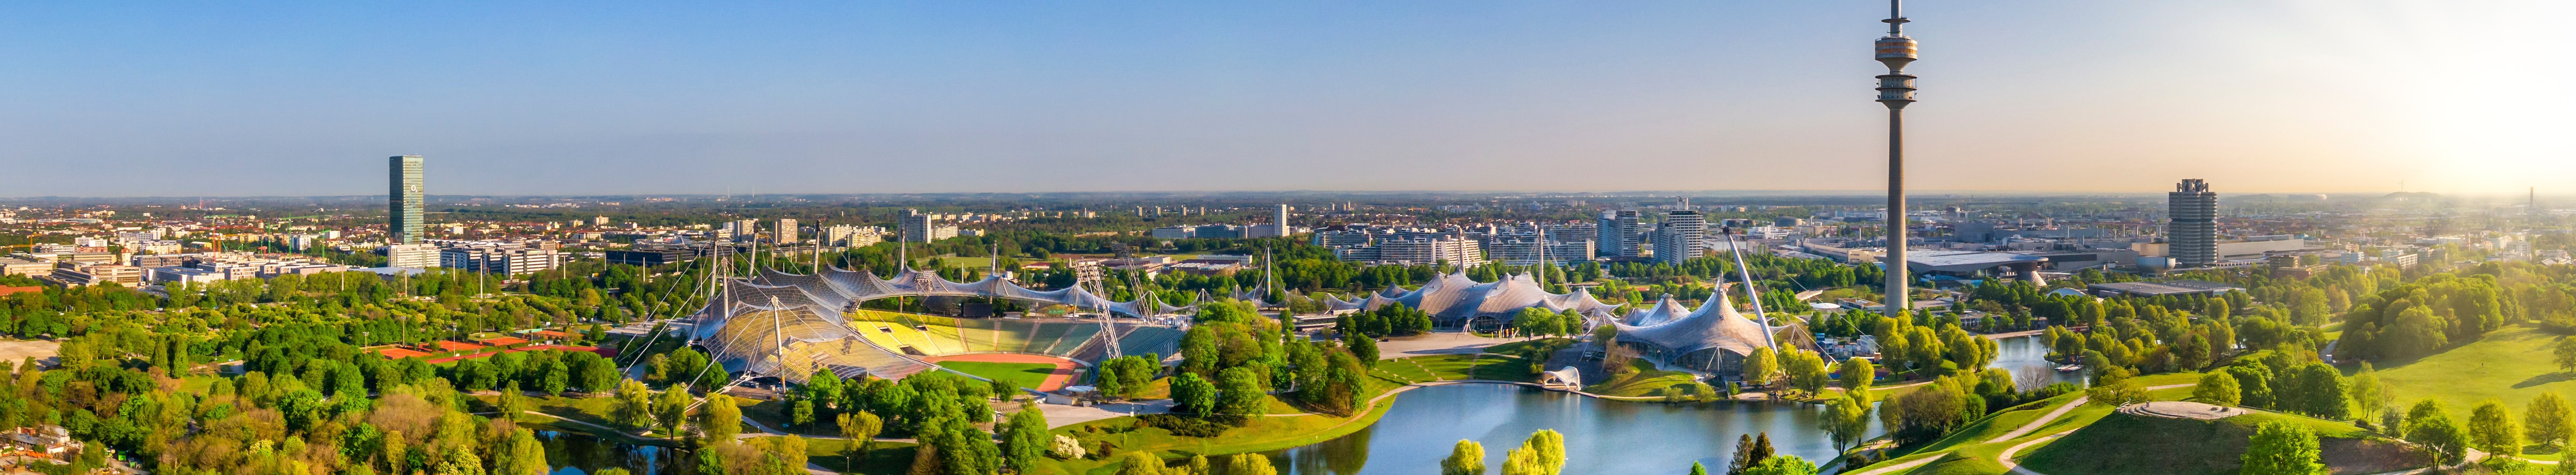 Blick über den Münchener Olympiapark mit vielen Stadtbäumen